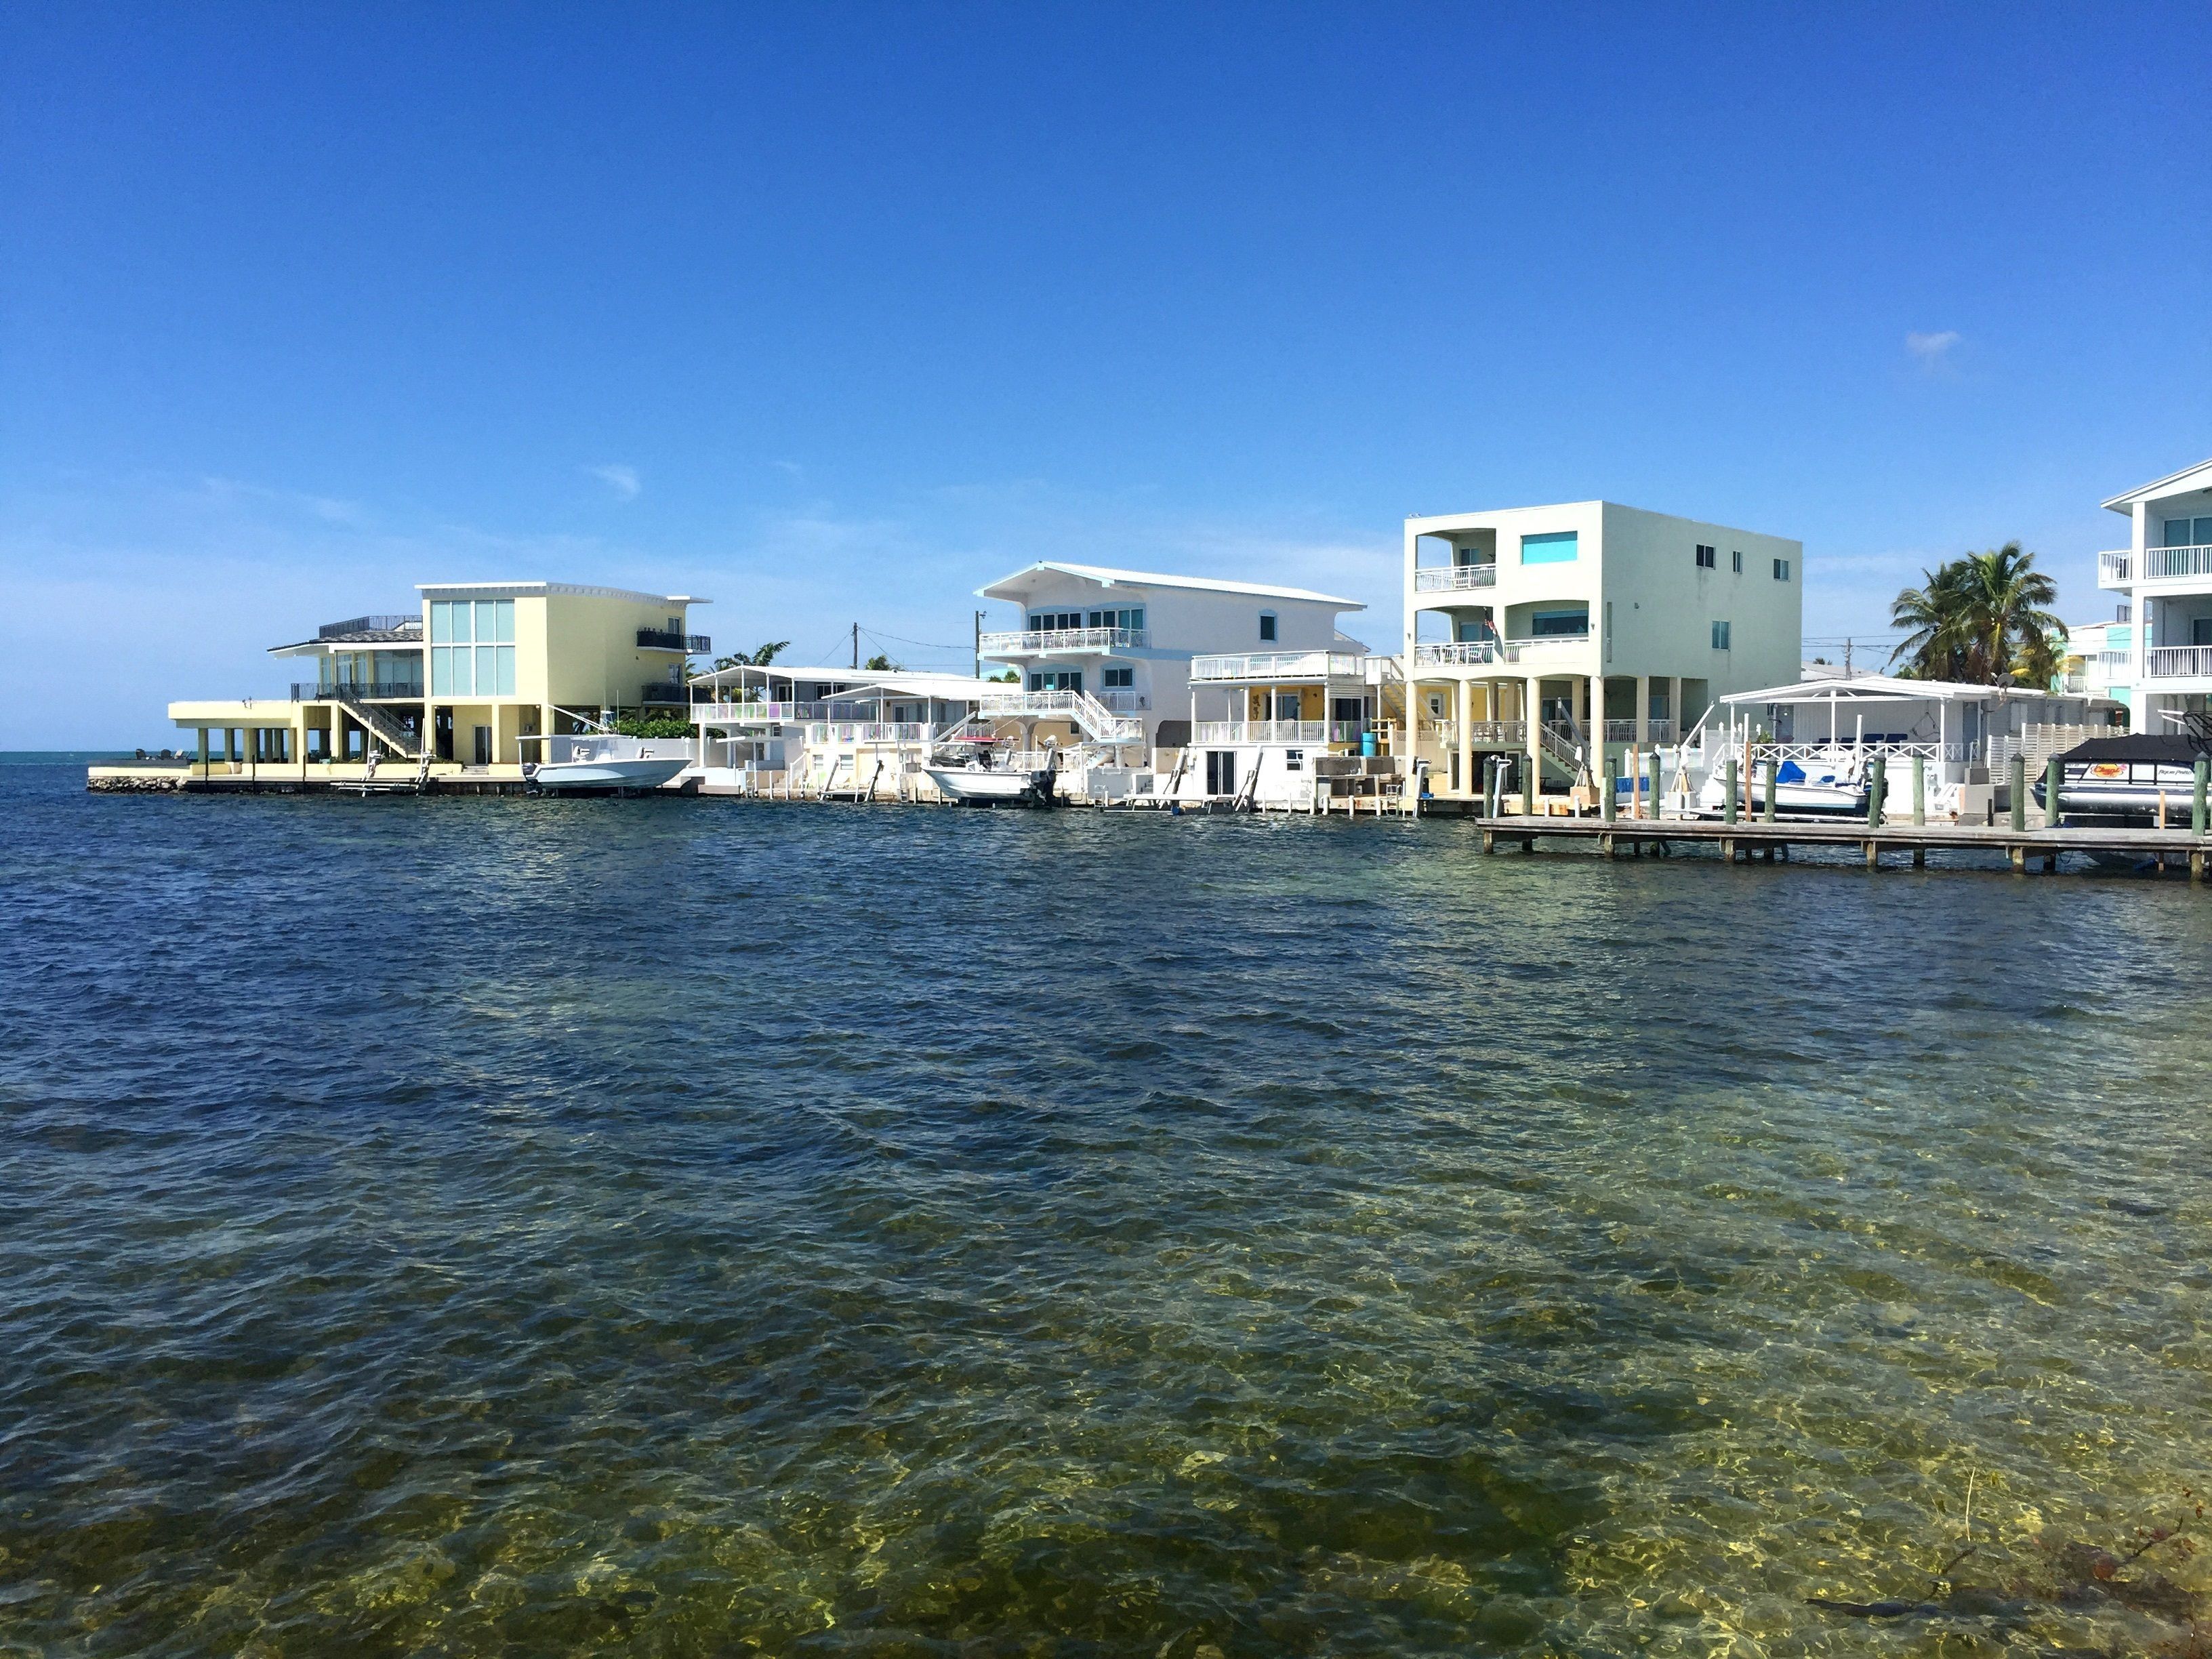 Fotografía del 9 de mayo donde aprecia una vista de barcos amarrados durante el aislamiento por coronavirus en Islamorada, uno de los seis pueblos de los Cayos de Florida. EFE/Ana Mengotti 